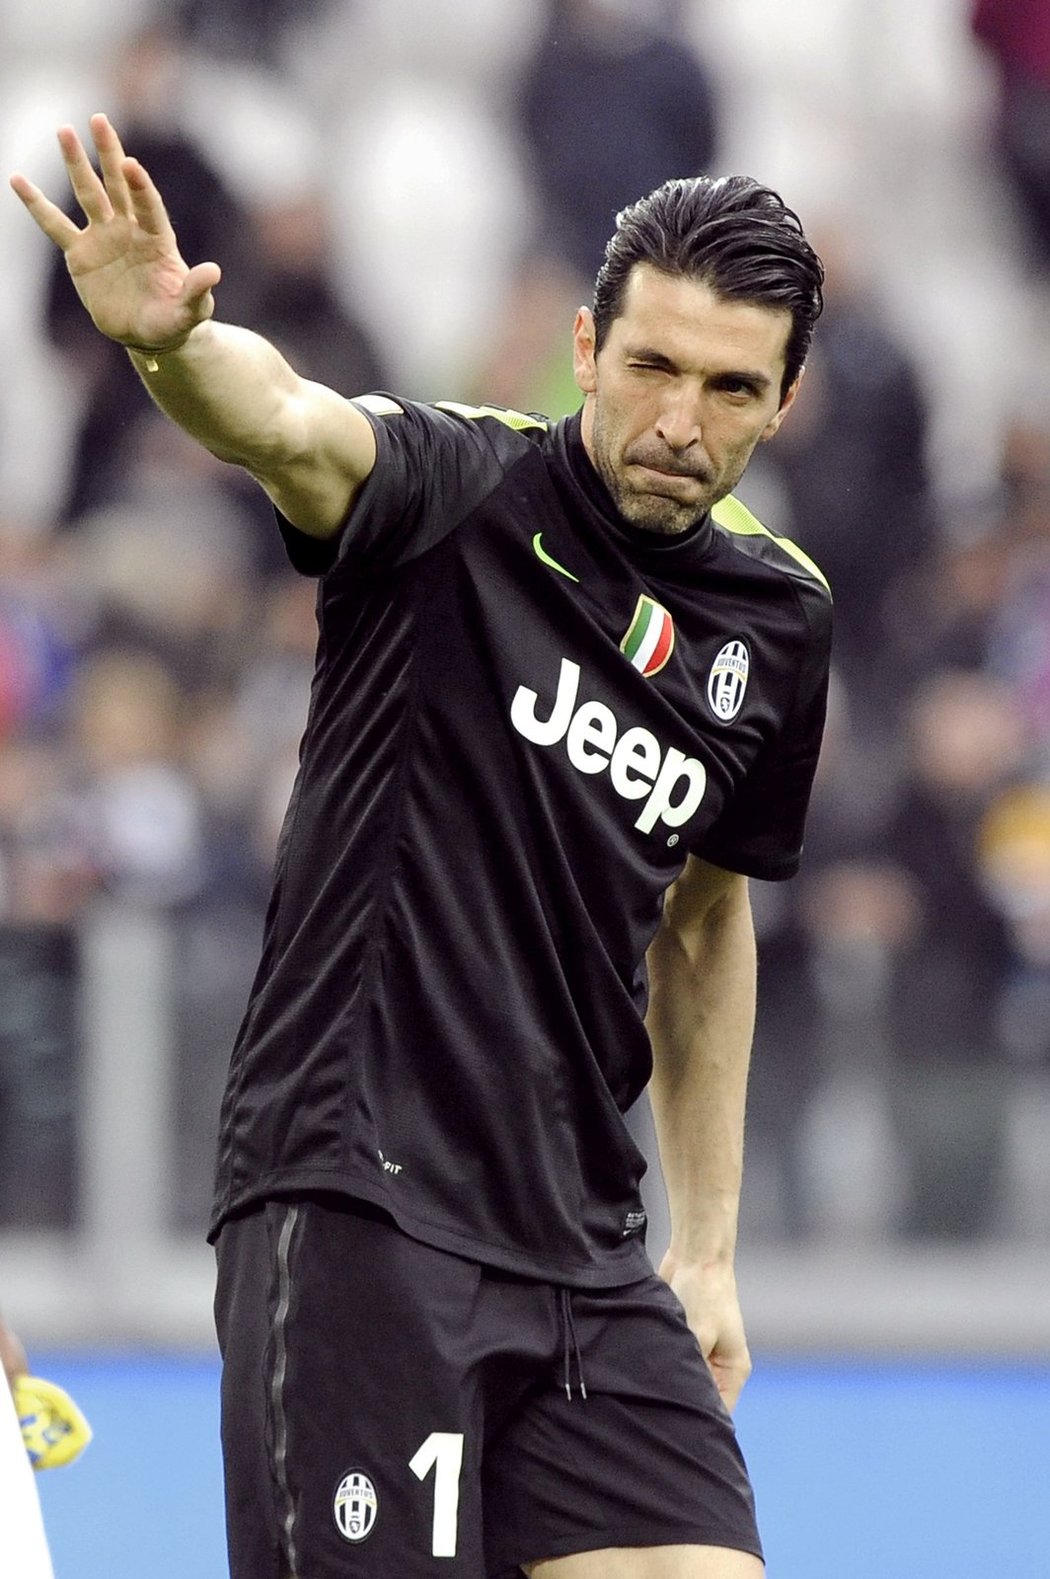 Brankář Juventusu Gigi Buffon mohl být po zápase proti Chievu spokojený. Čisté konto sice neudržel, ale jeho Juventus vyhrál 3:1